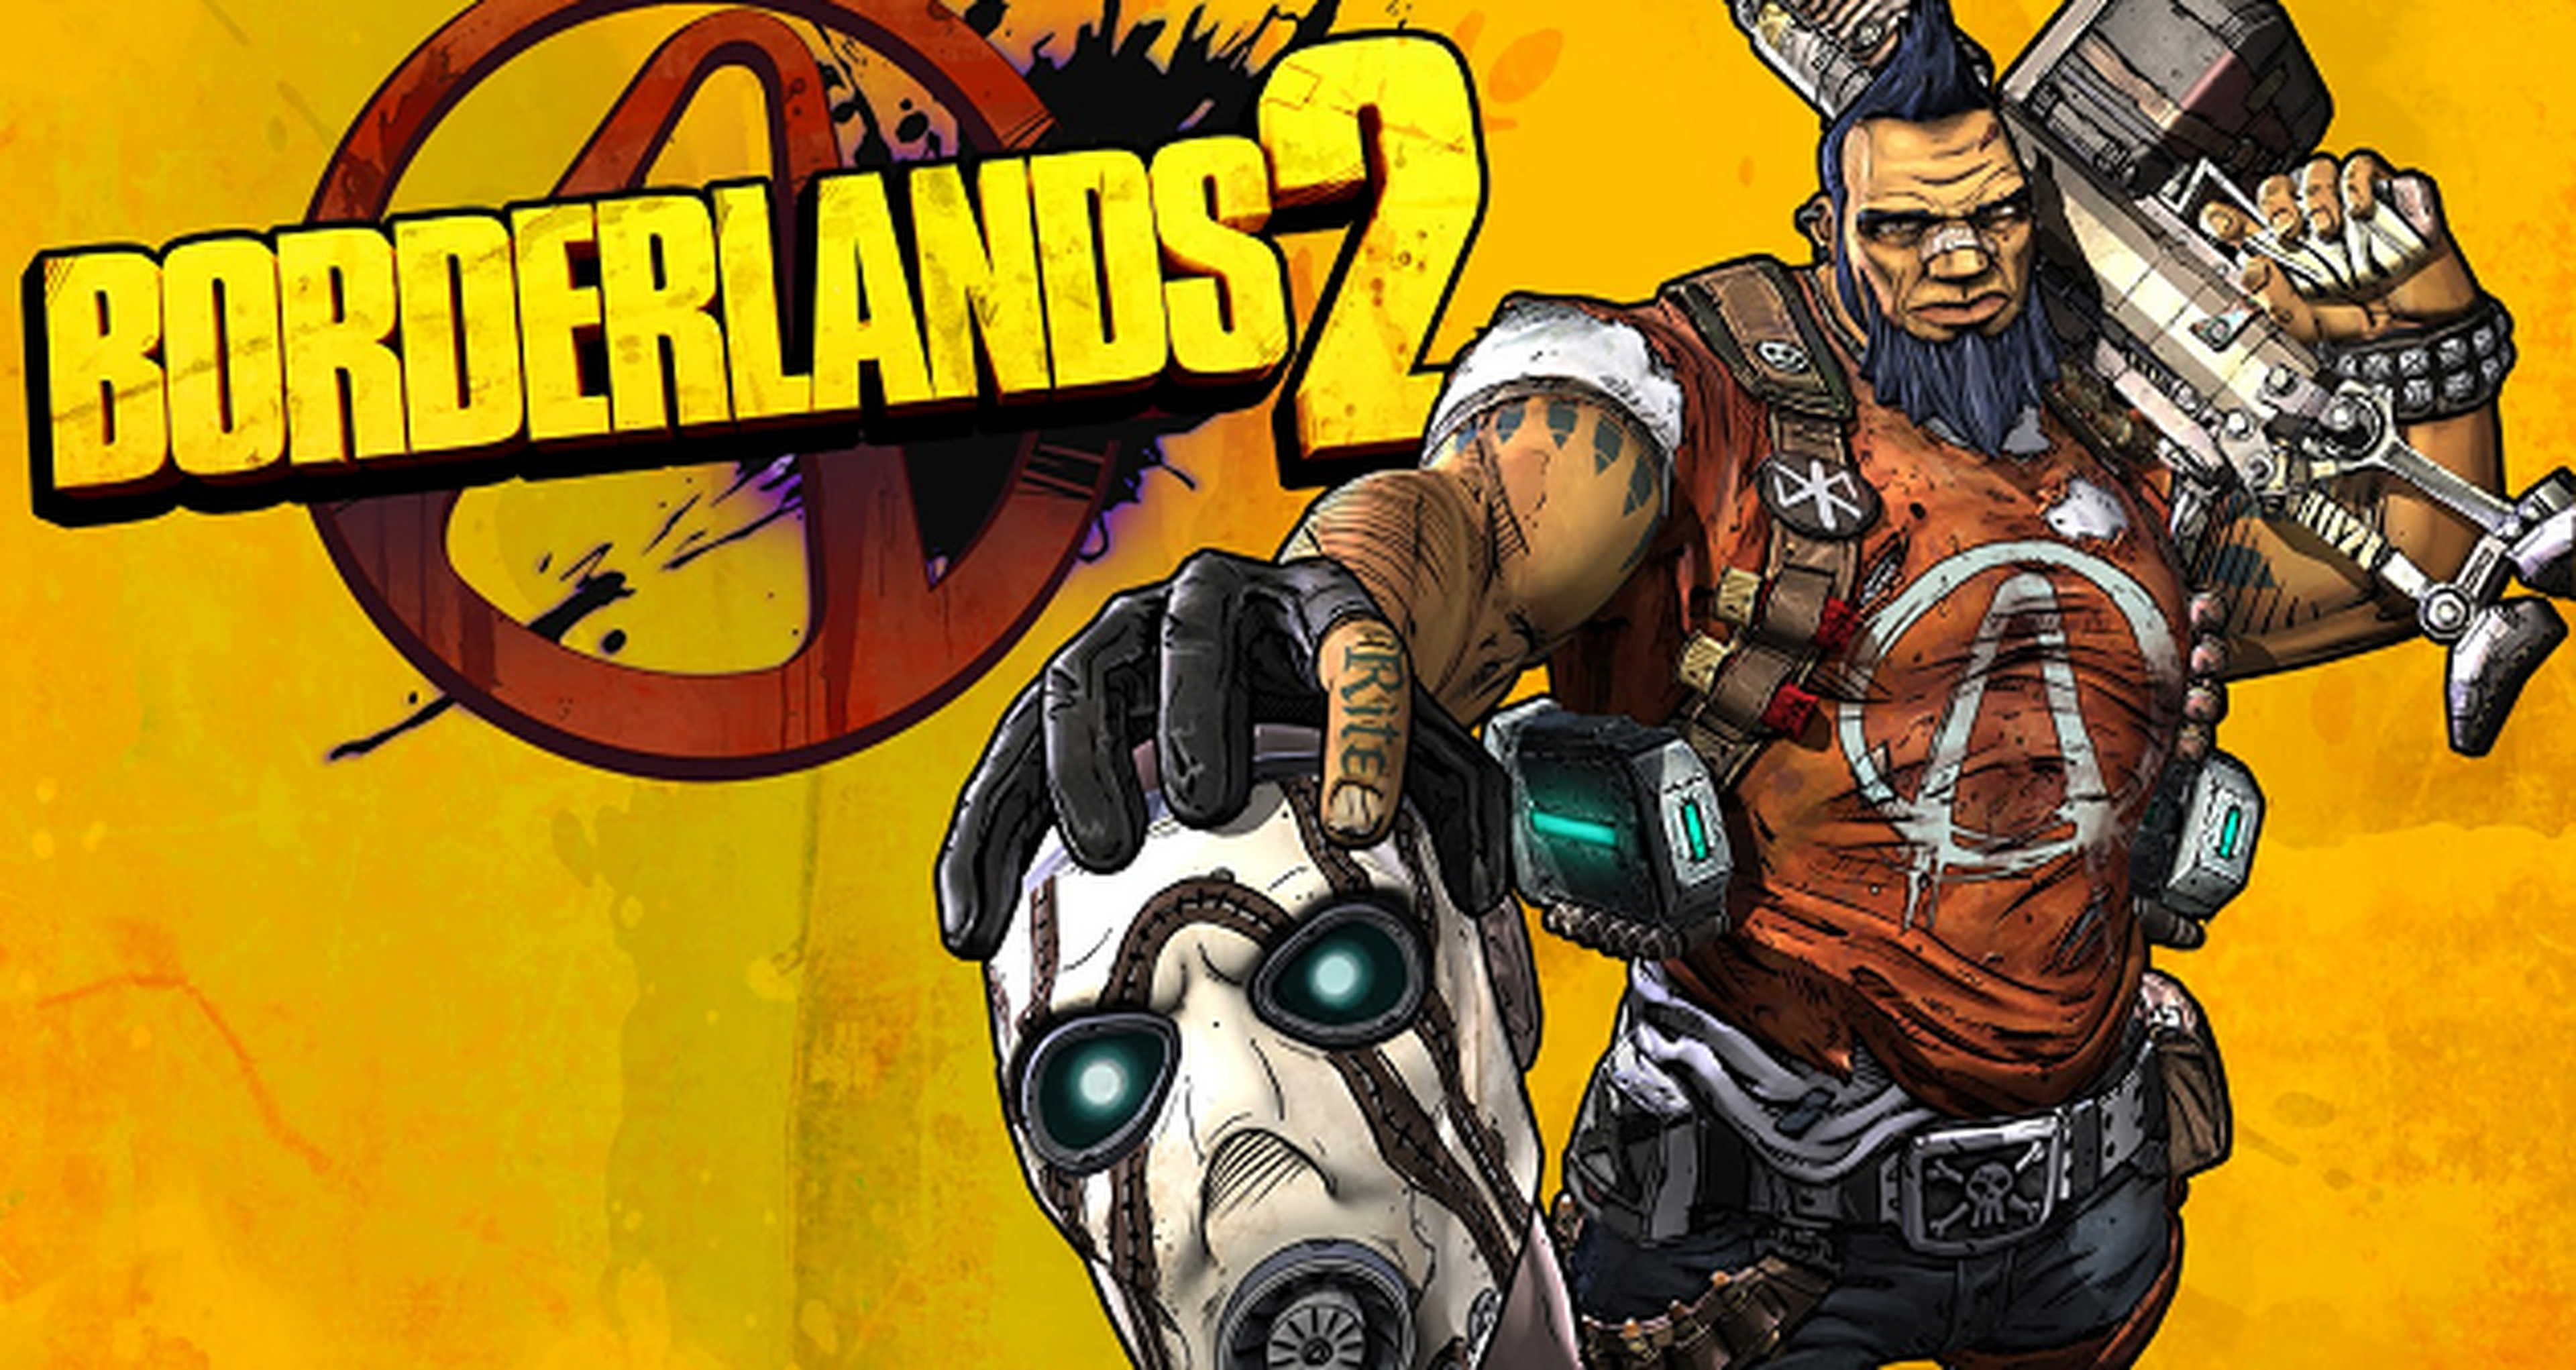 Borderlands 2 gratis durante el fin de semana en Steam